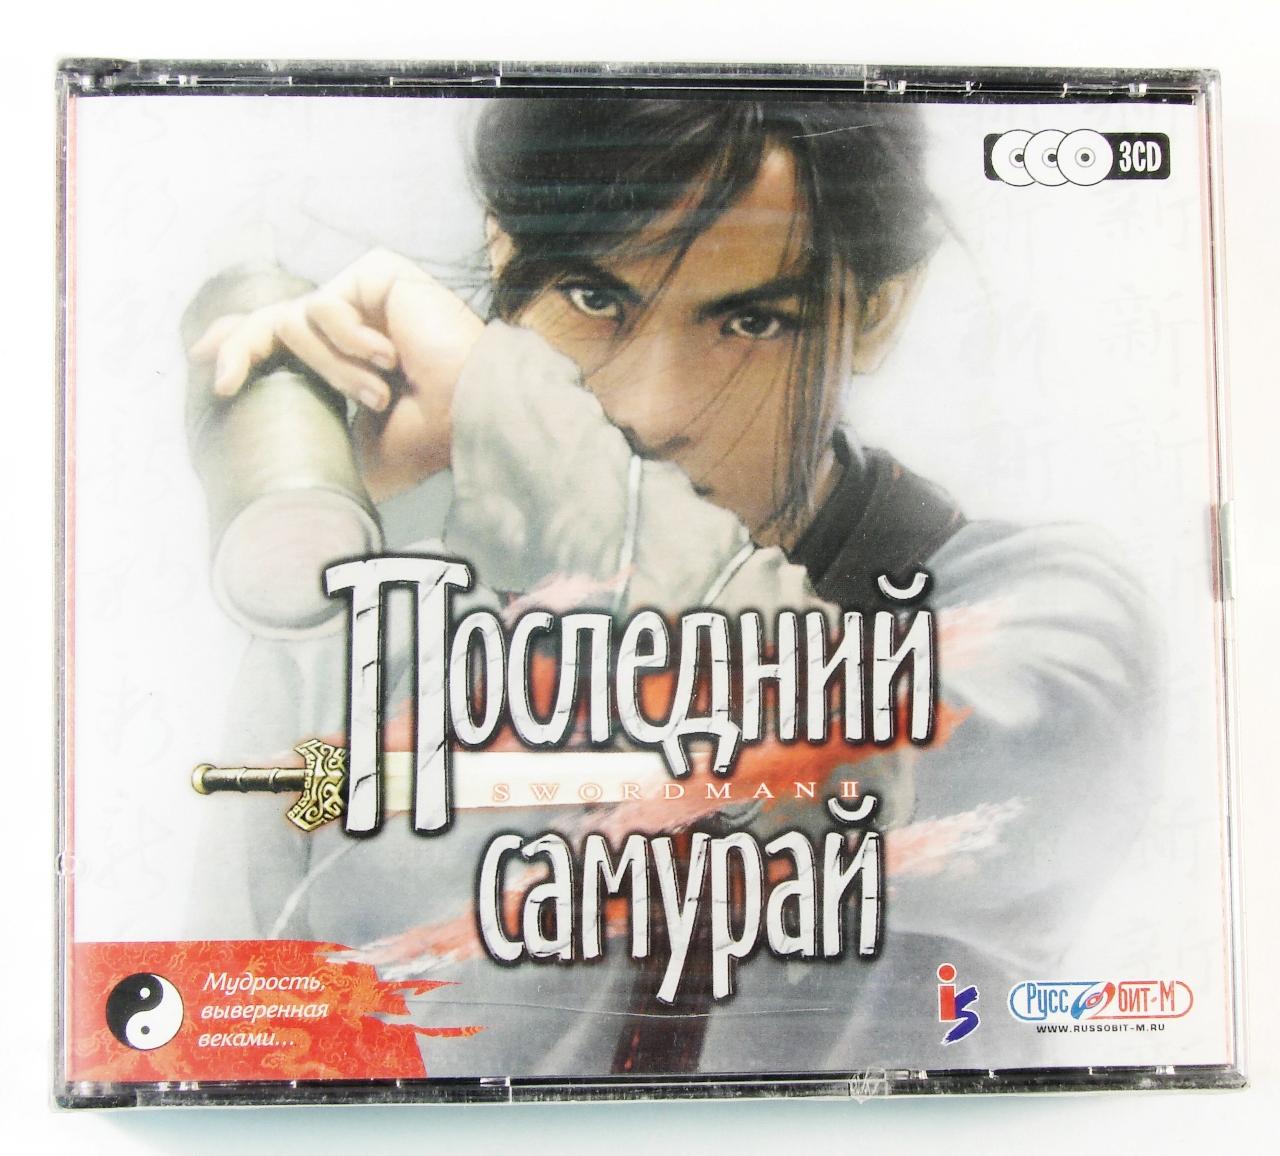 Компьютерный компакт-диск Последний самурай (ПК), фирма "Руссобит-М", CD